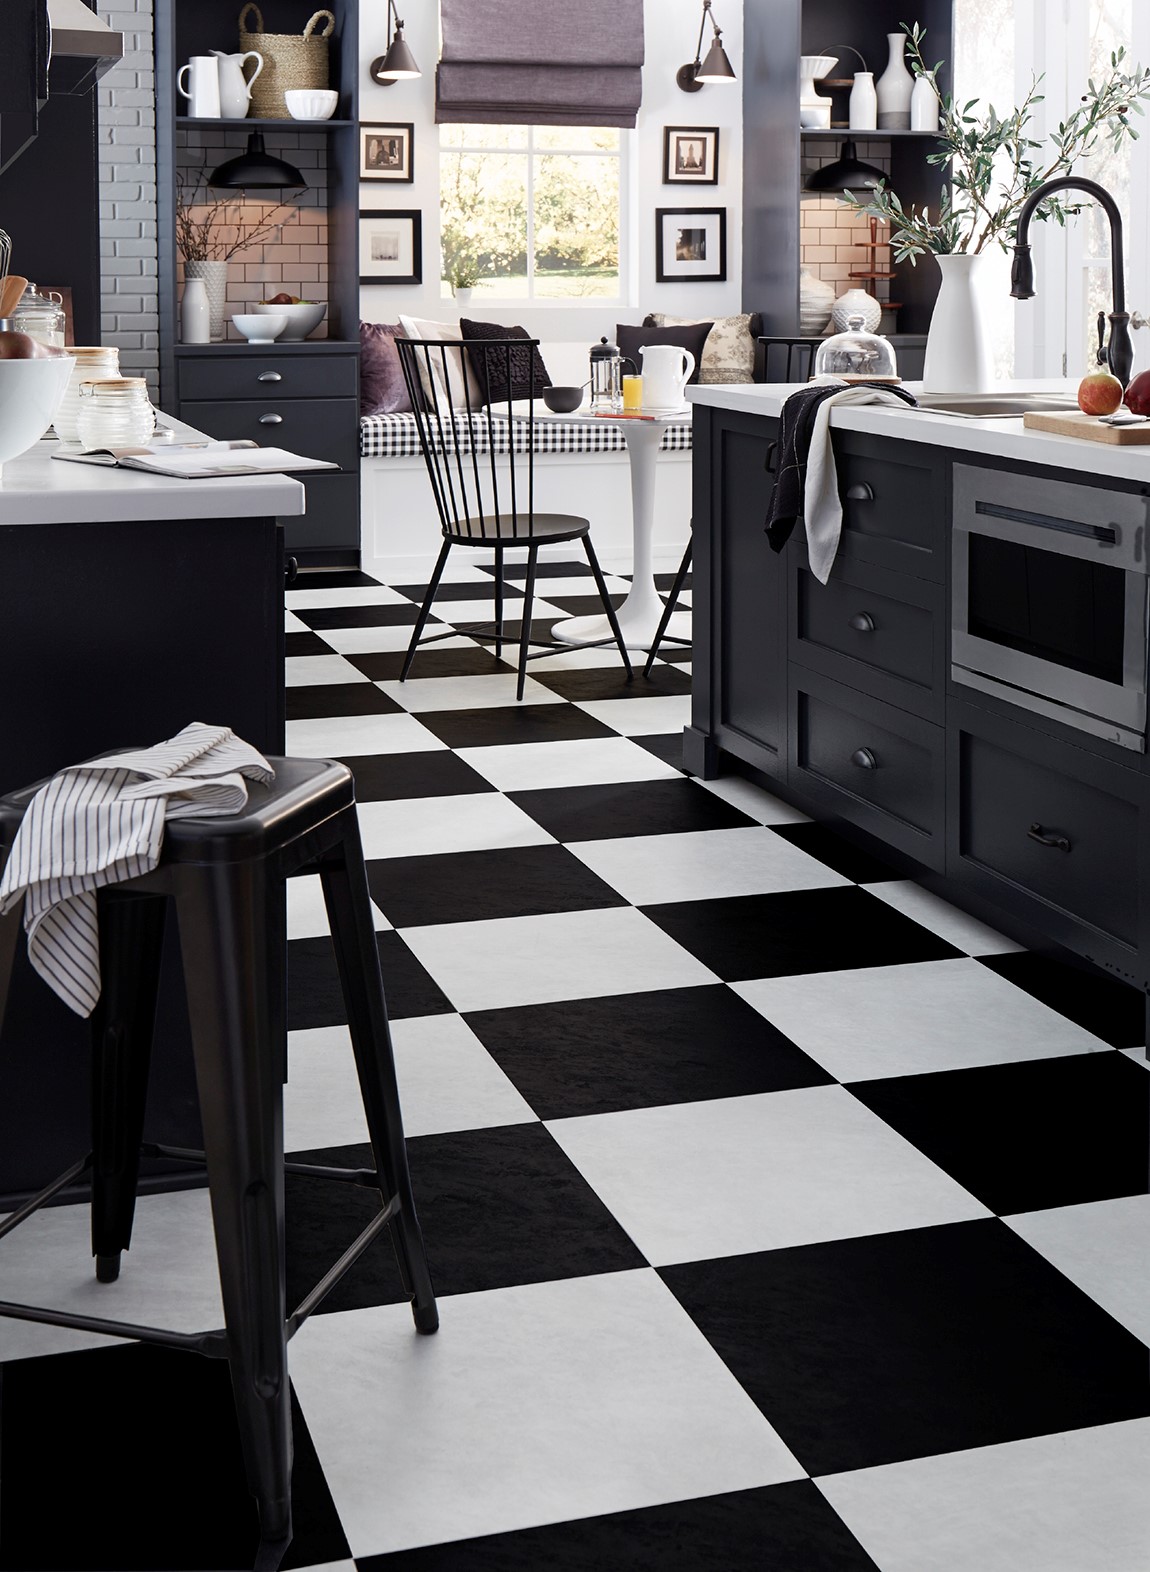 kitchen with black and white retro tiles